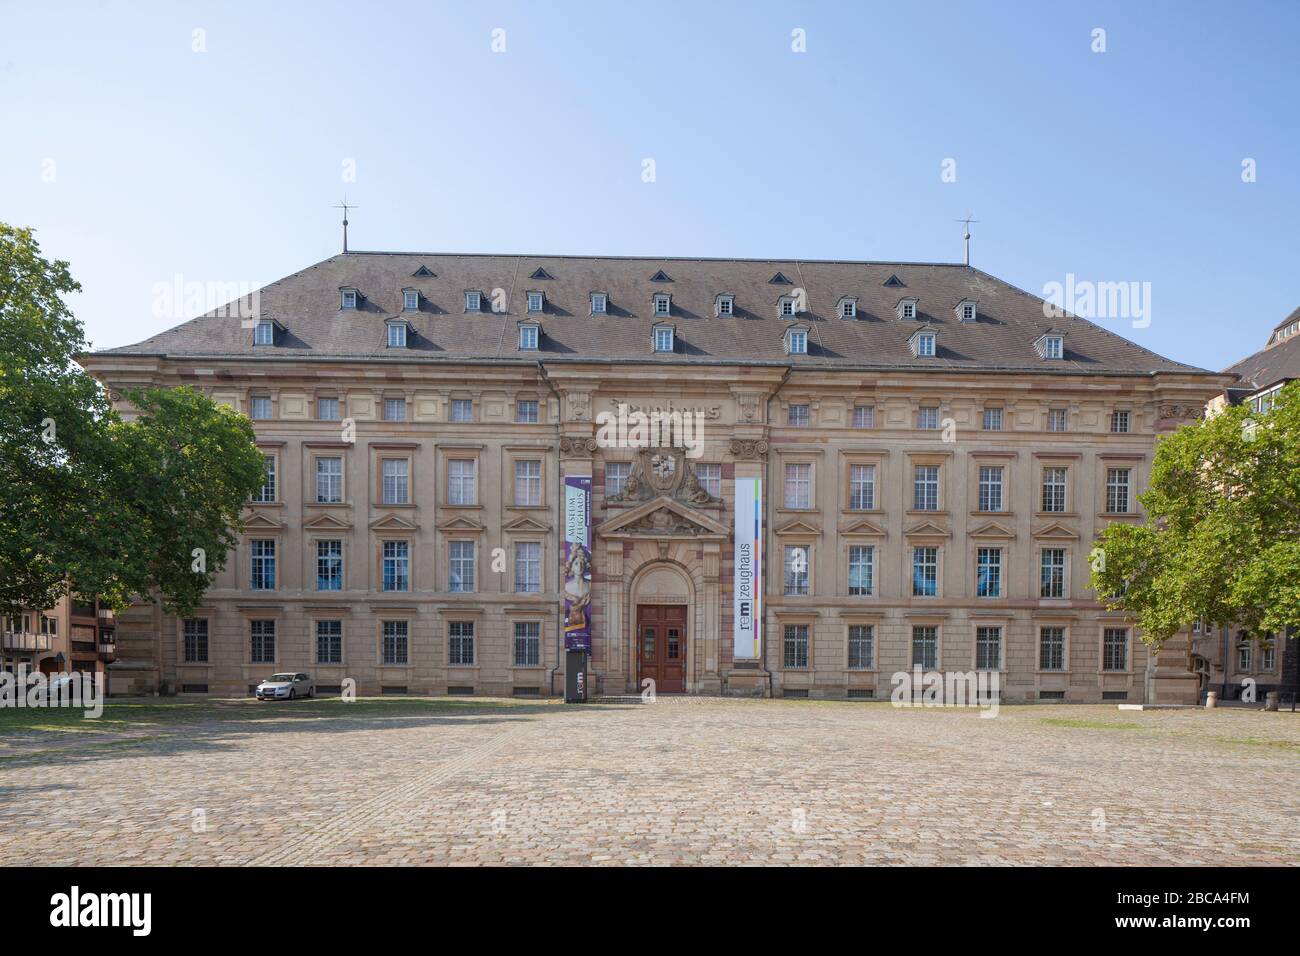 Zeughaus Museum, Mannheim, Baden-Wuerttemberg, Germany, Europe Stock Photo